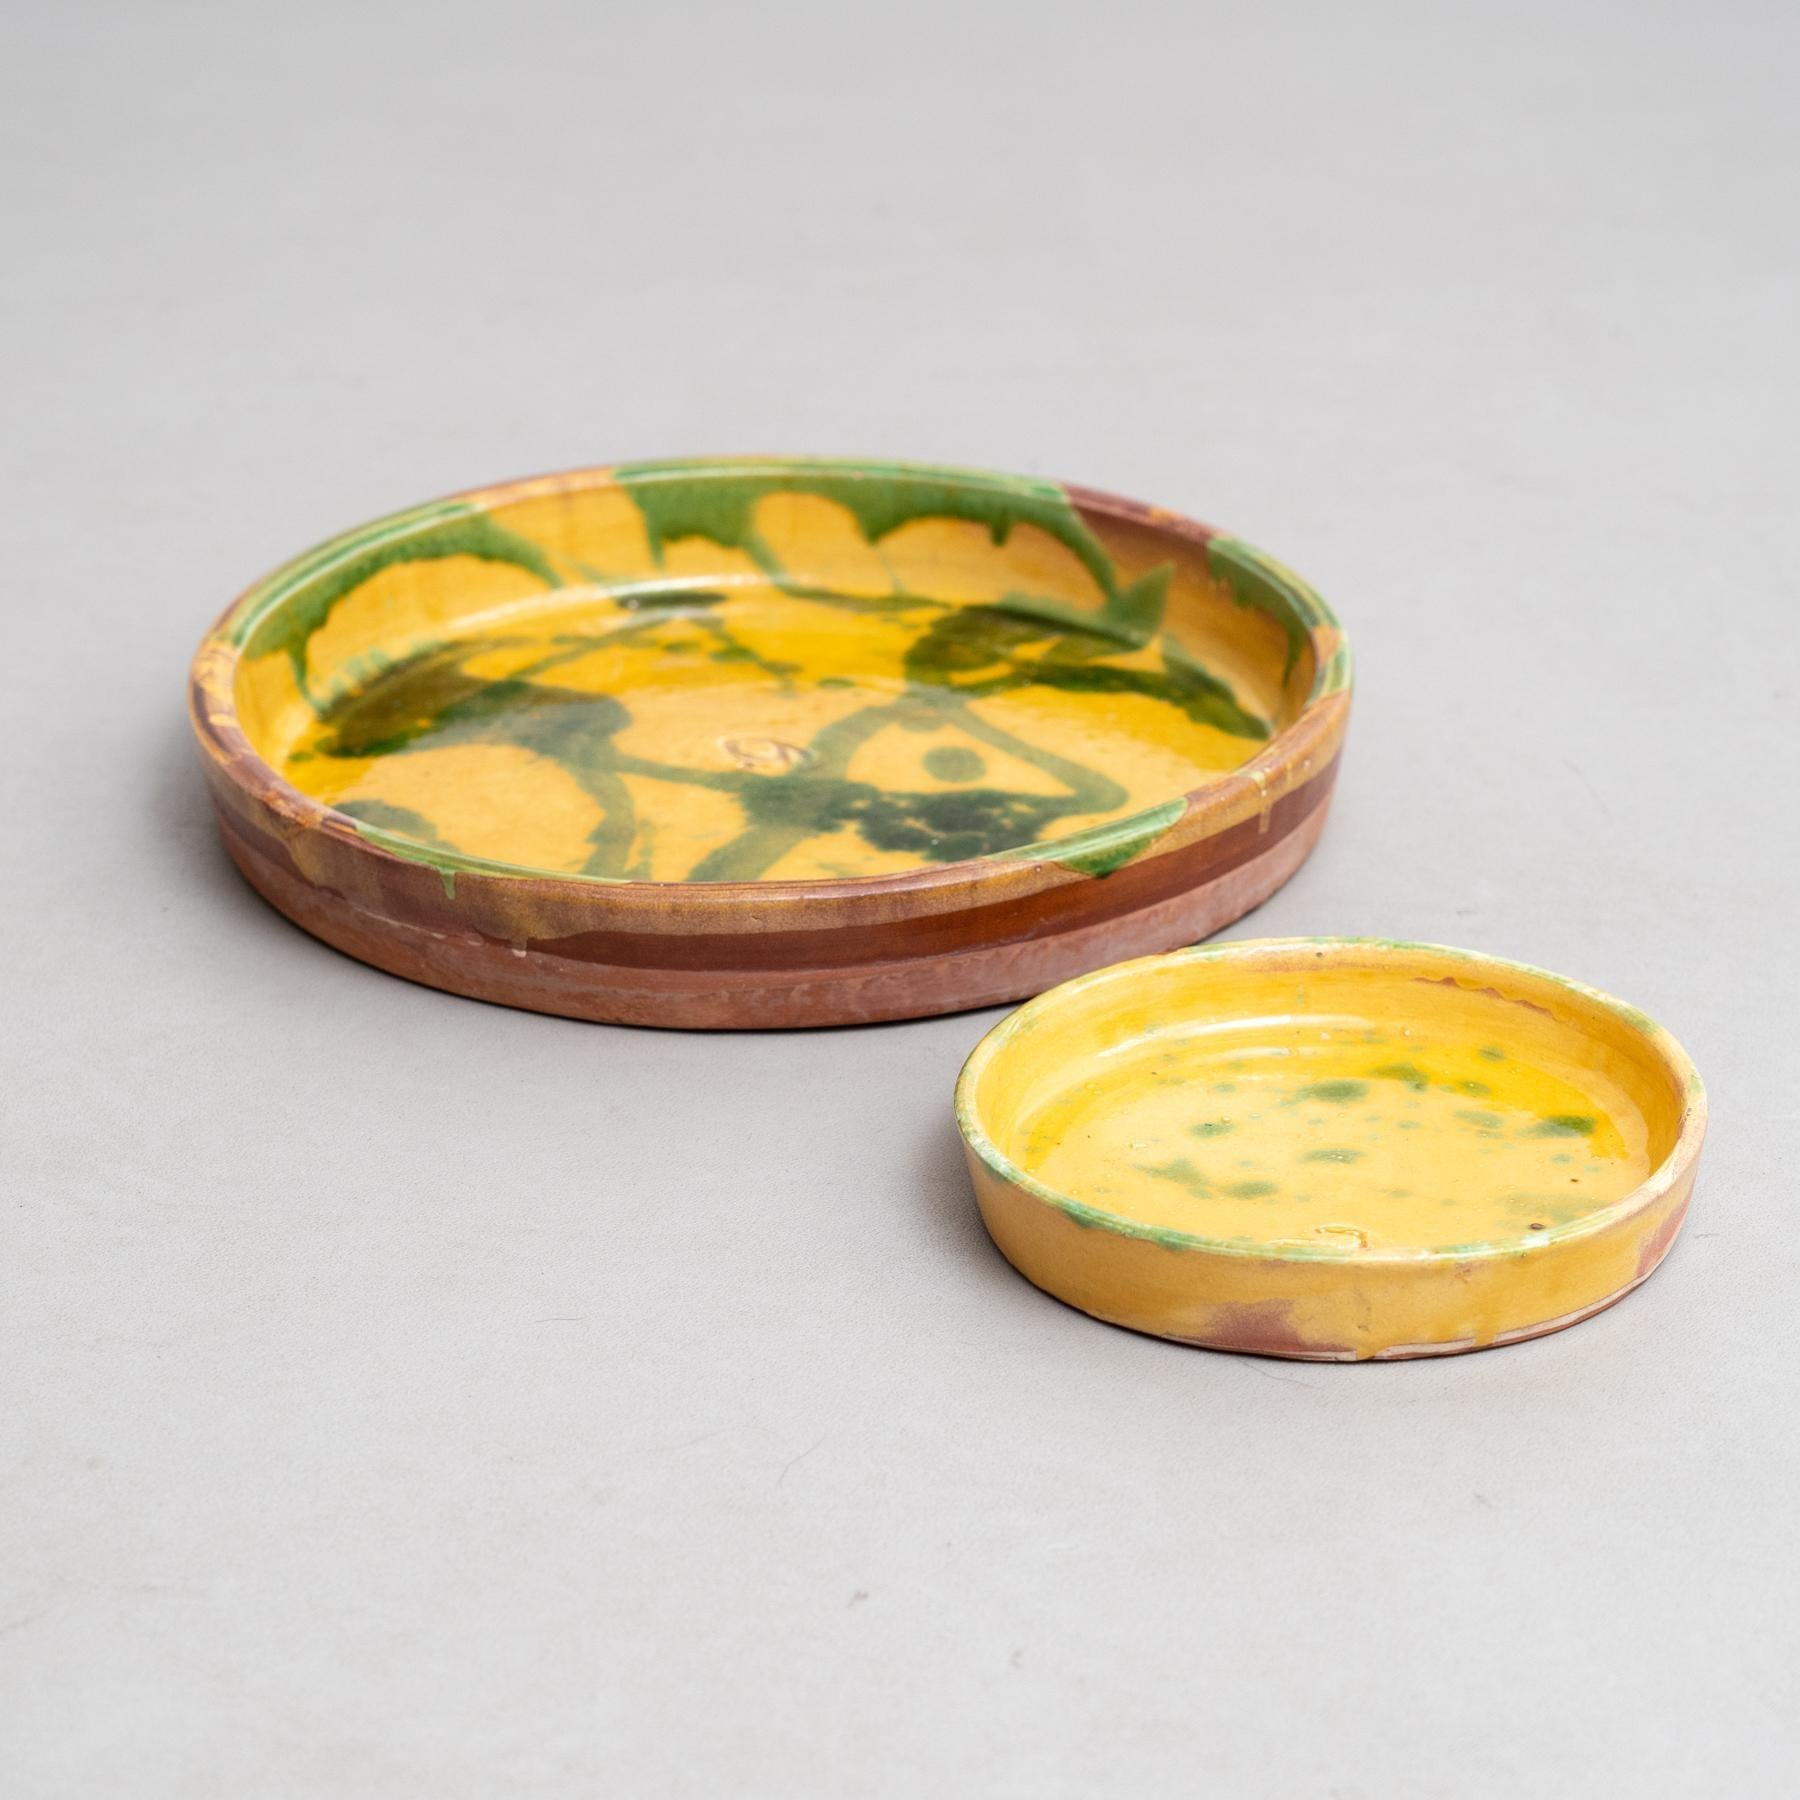 Ce set de deux assiettes en céramique jaune avec de charmantes taches vertes évoque l'essence de la poterie folklorique traditionnelle du début du XXe siècle. Chaque pièce, soigneusement peinte à la main, reflète le savoir-faire d'un artisan inconnu